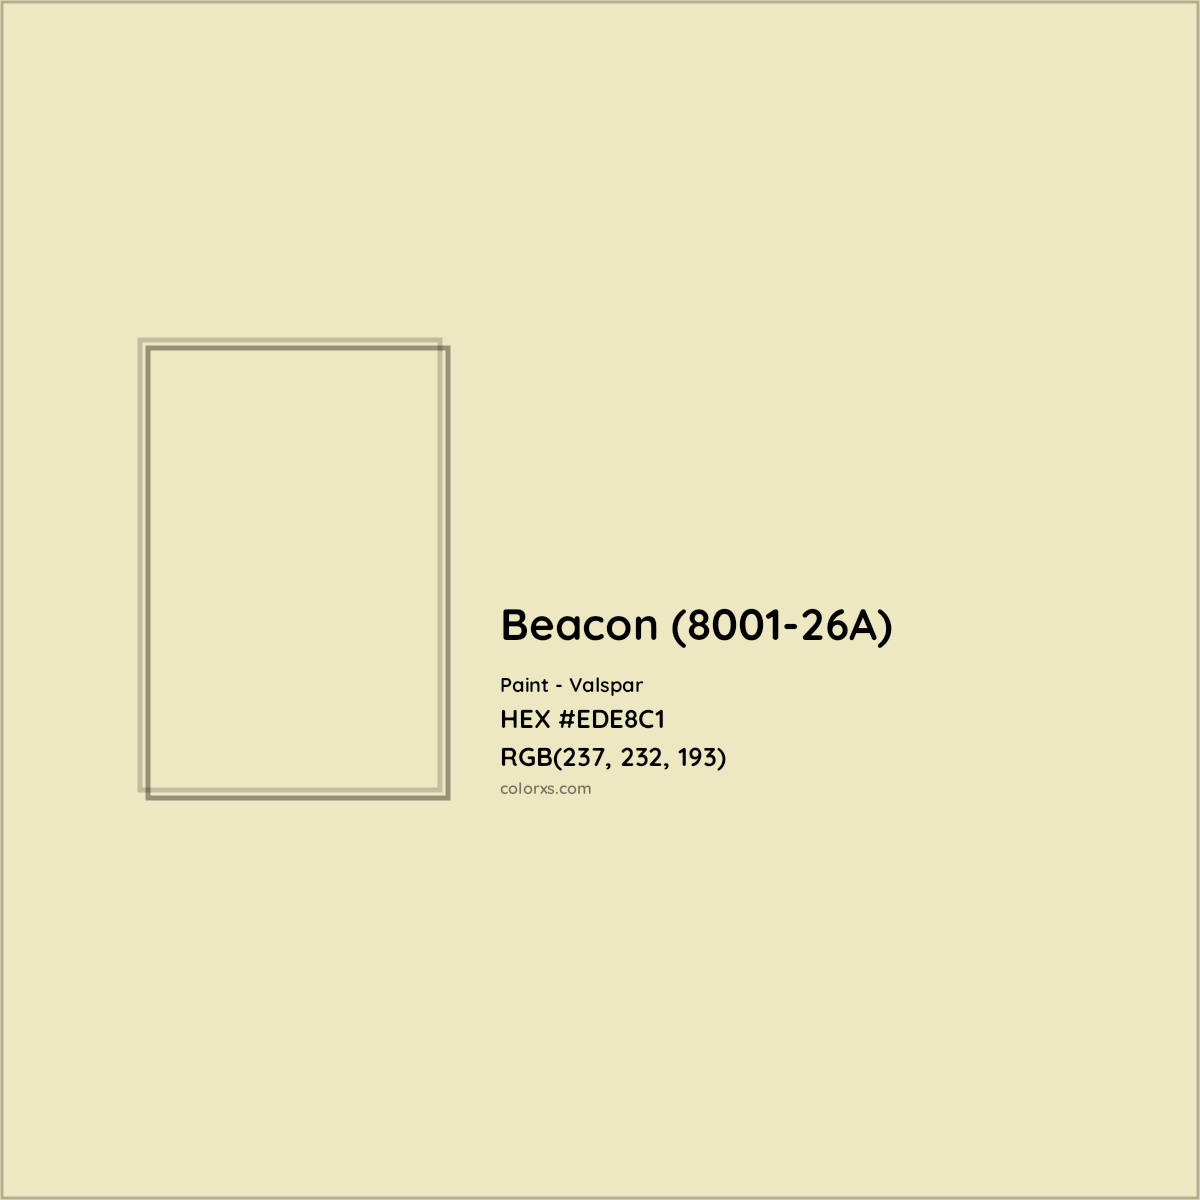 HEX #EDE8C1 Beacon (8001-26A) Paint Valspar - Color Code